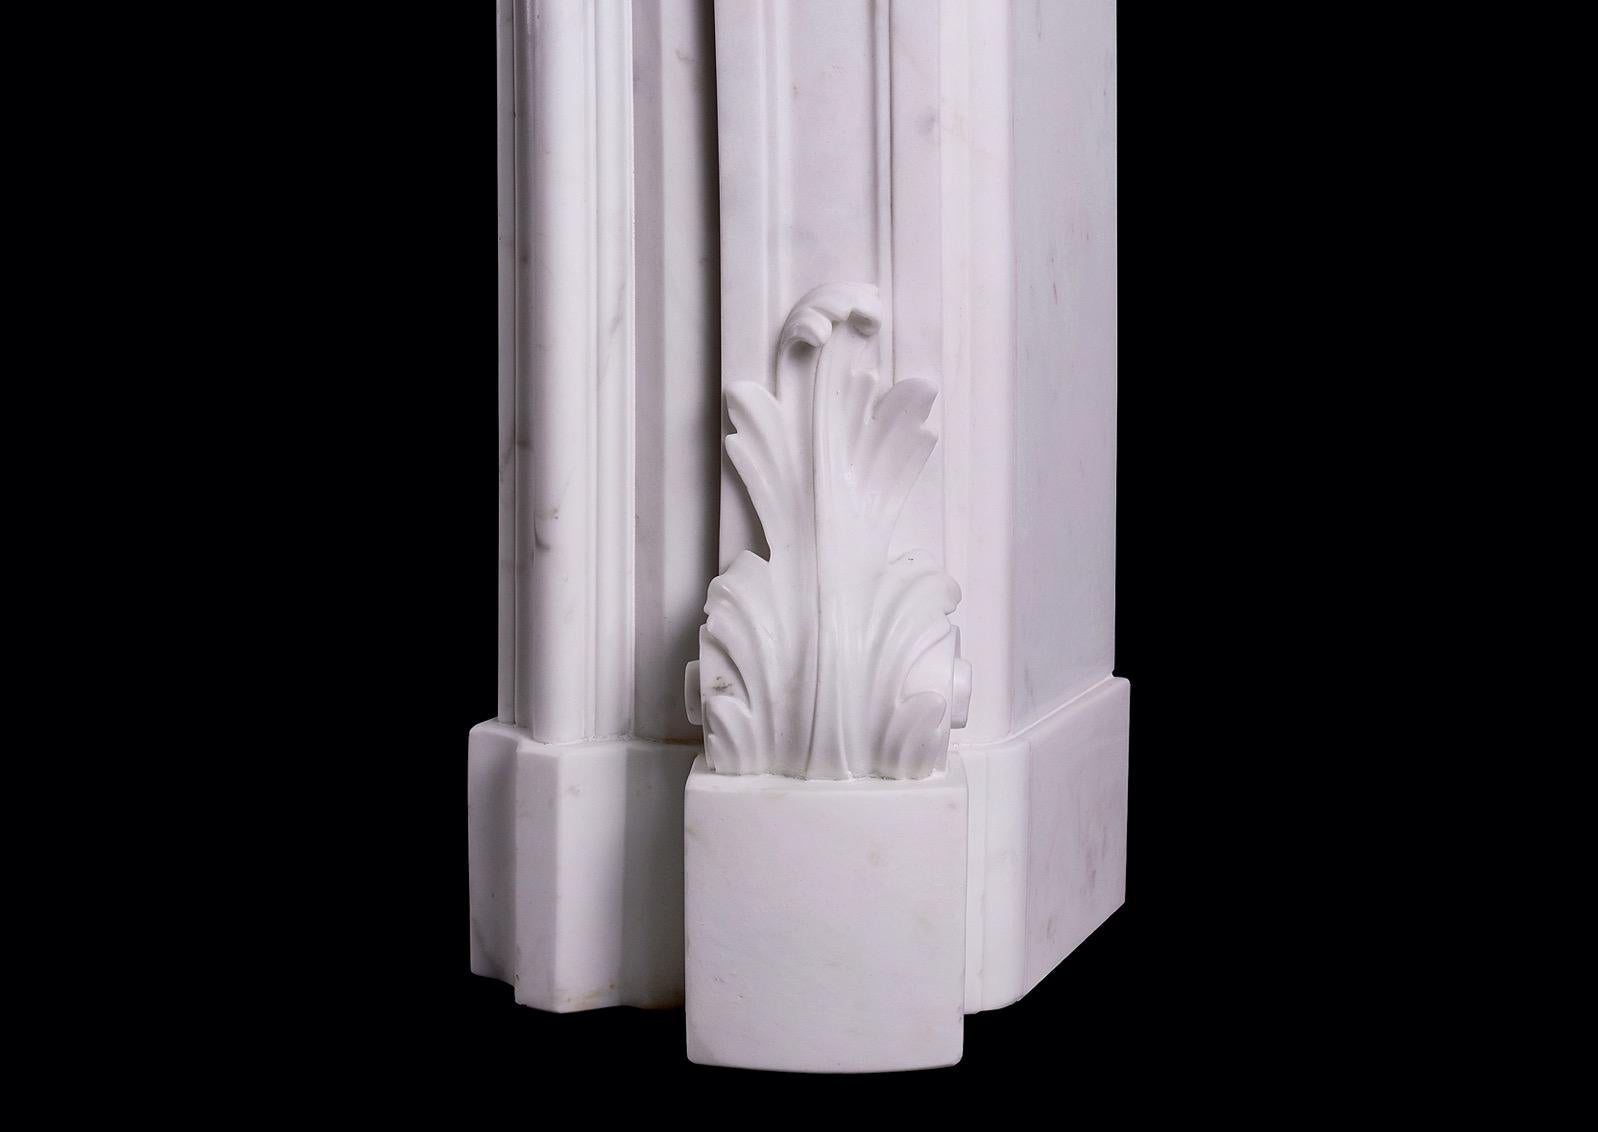 Cheminée de style Régence anglaise en marbre Statuaire de très belle qualité. Les jambages sont ornés de feuilles d'acanthe raides à la base, surmontées de boules, de feuilles d'acanthe et de rinceaux. La frise est ornée d'un cartouche sculpté au